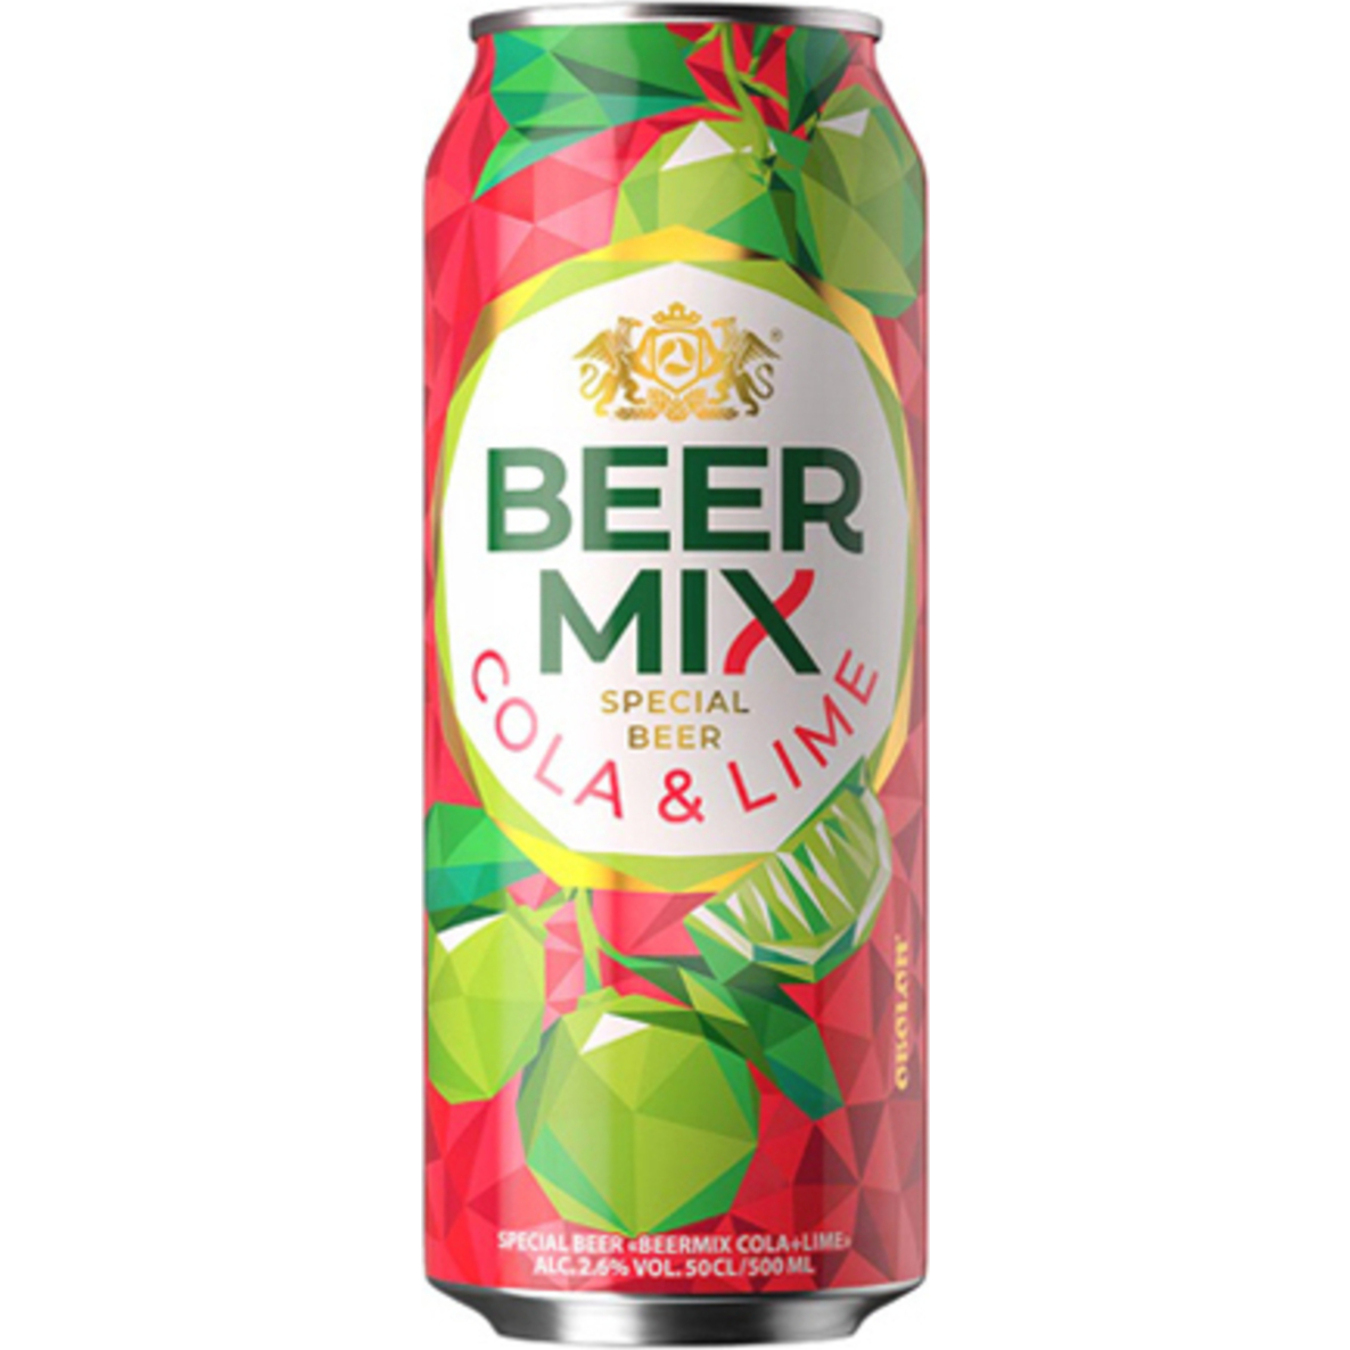 Пиво Оболонь Beermix Вишня спеціальне світле 2,5% 0,5л